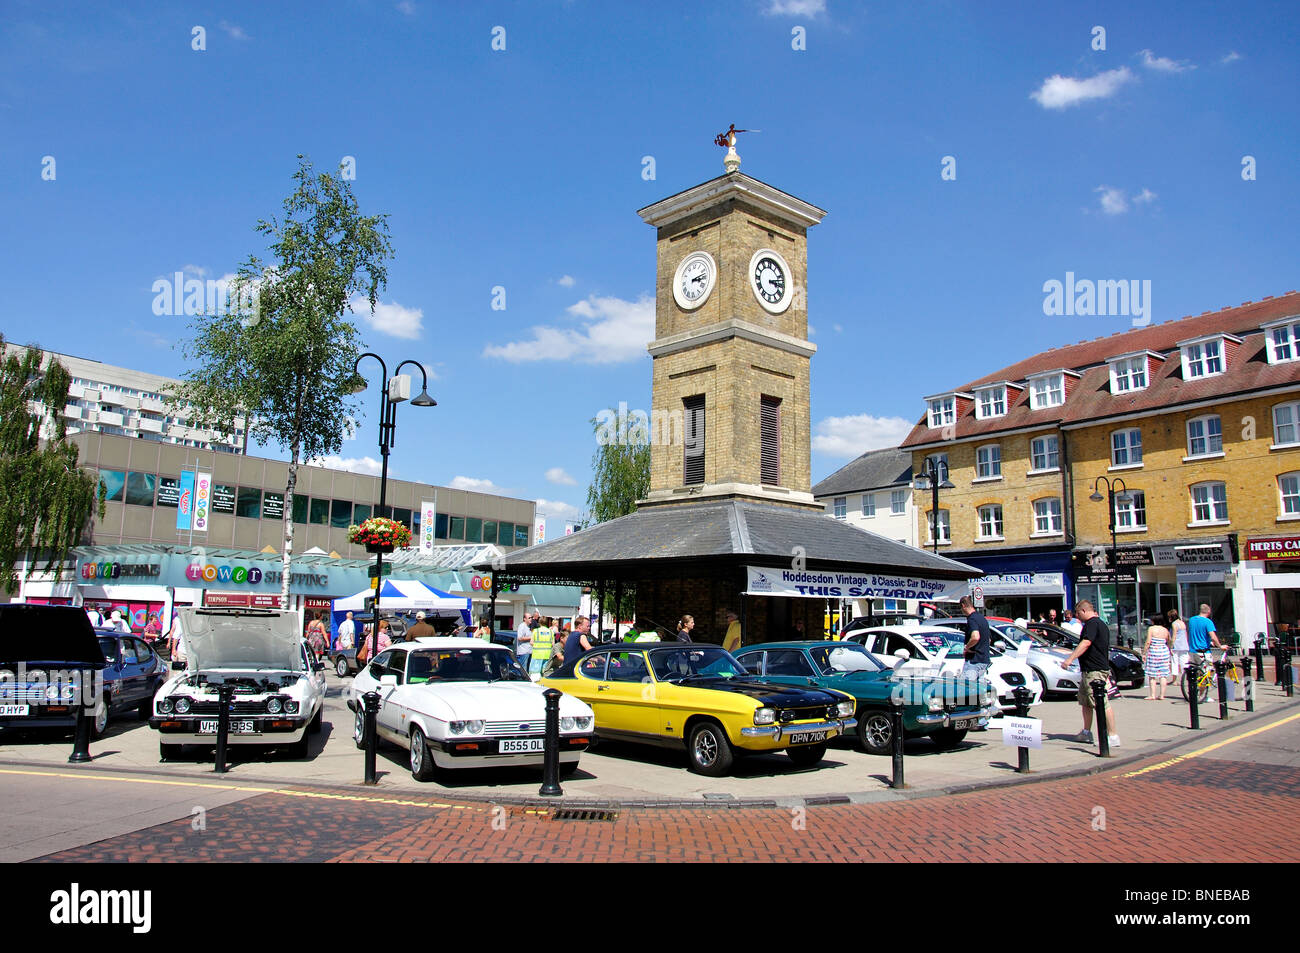 La tour de l'horloge, Hoddesdon, Hertfordshire, Angleterre, Royaume-Uni Banque D'Images